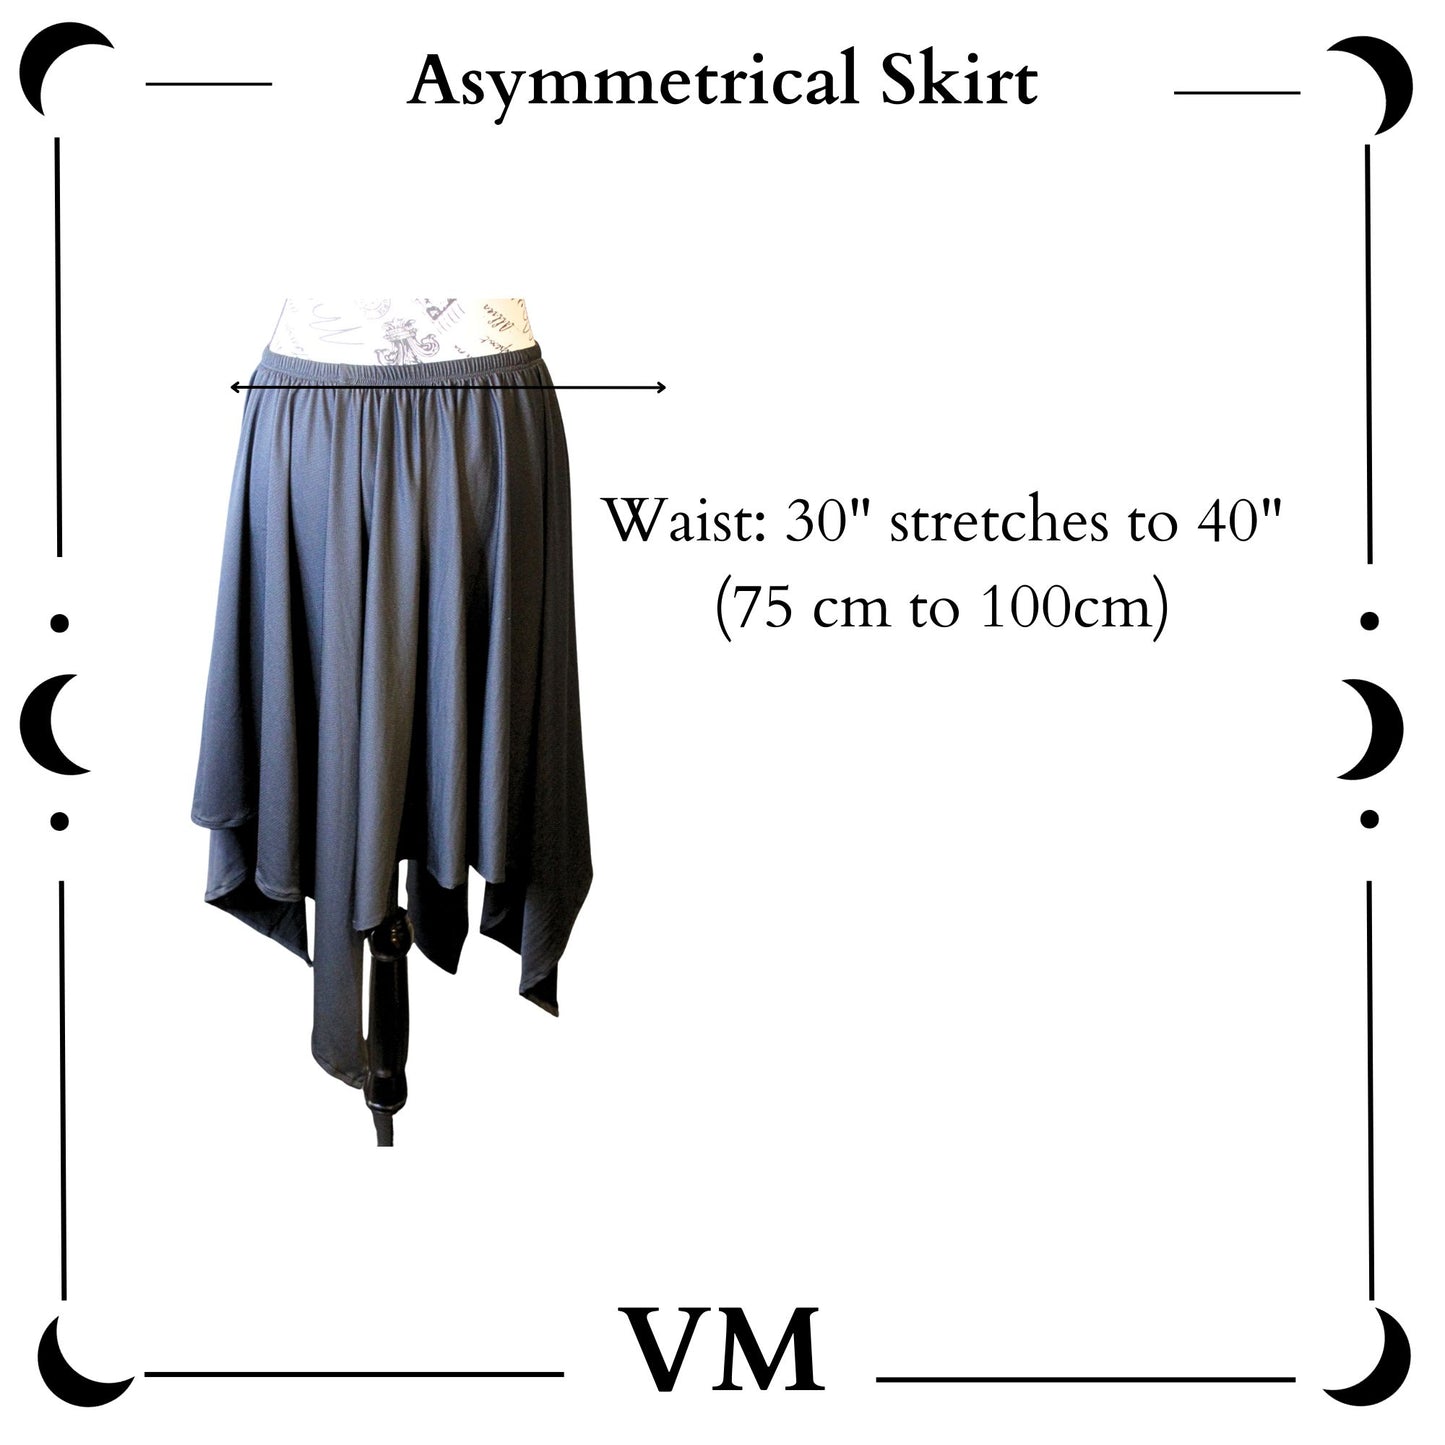 The VM Long Asymmetrical Skirt